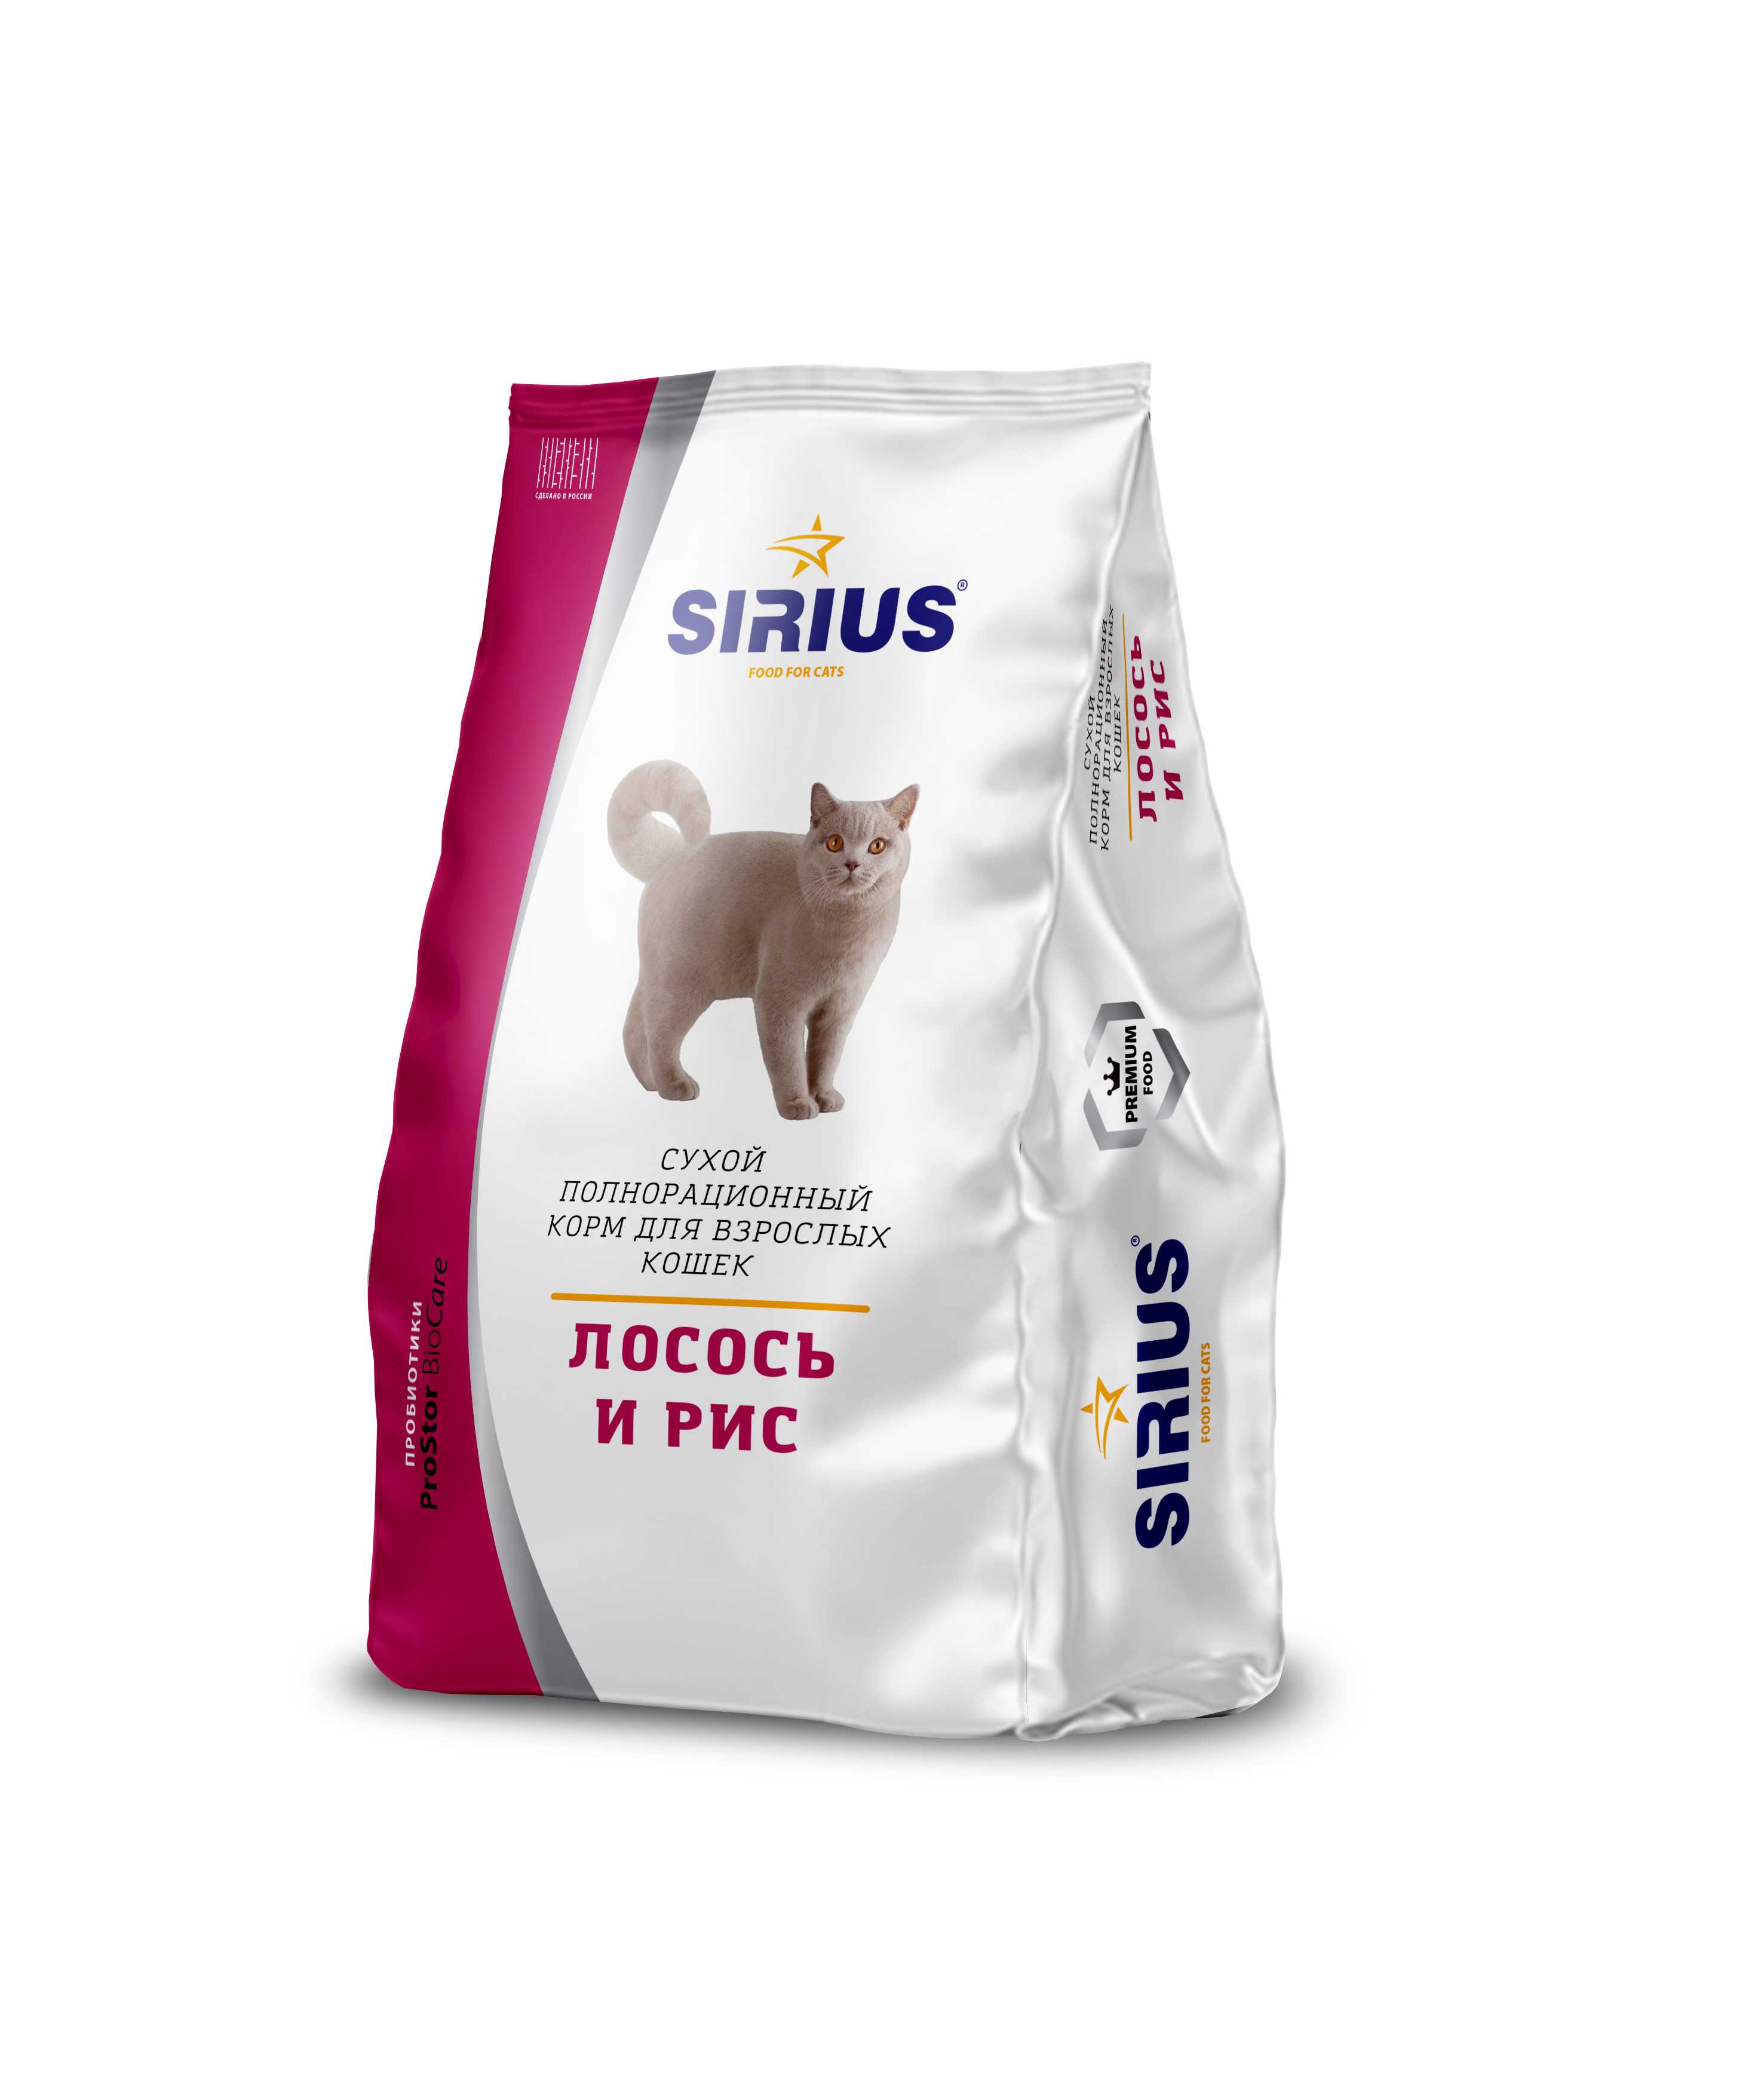 Купить сириус для кошек 10. Сириус корм для кошек 10 кг. Сухой корм для кошек Sirius лосось, с рисом 400 г. Sirius корм для кошек премиум. 'Сириус сухой полнорационный корм для взрослых кошек, лосось и рис.